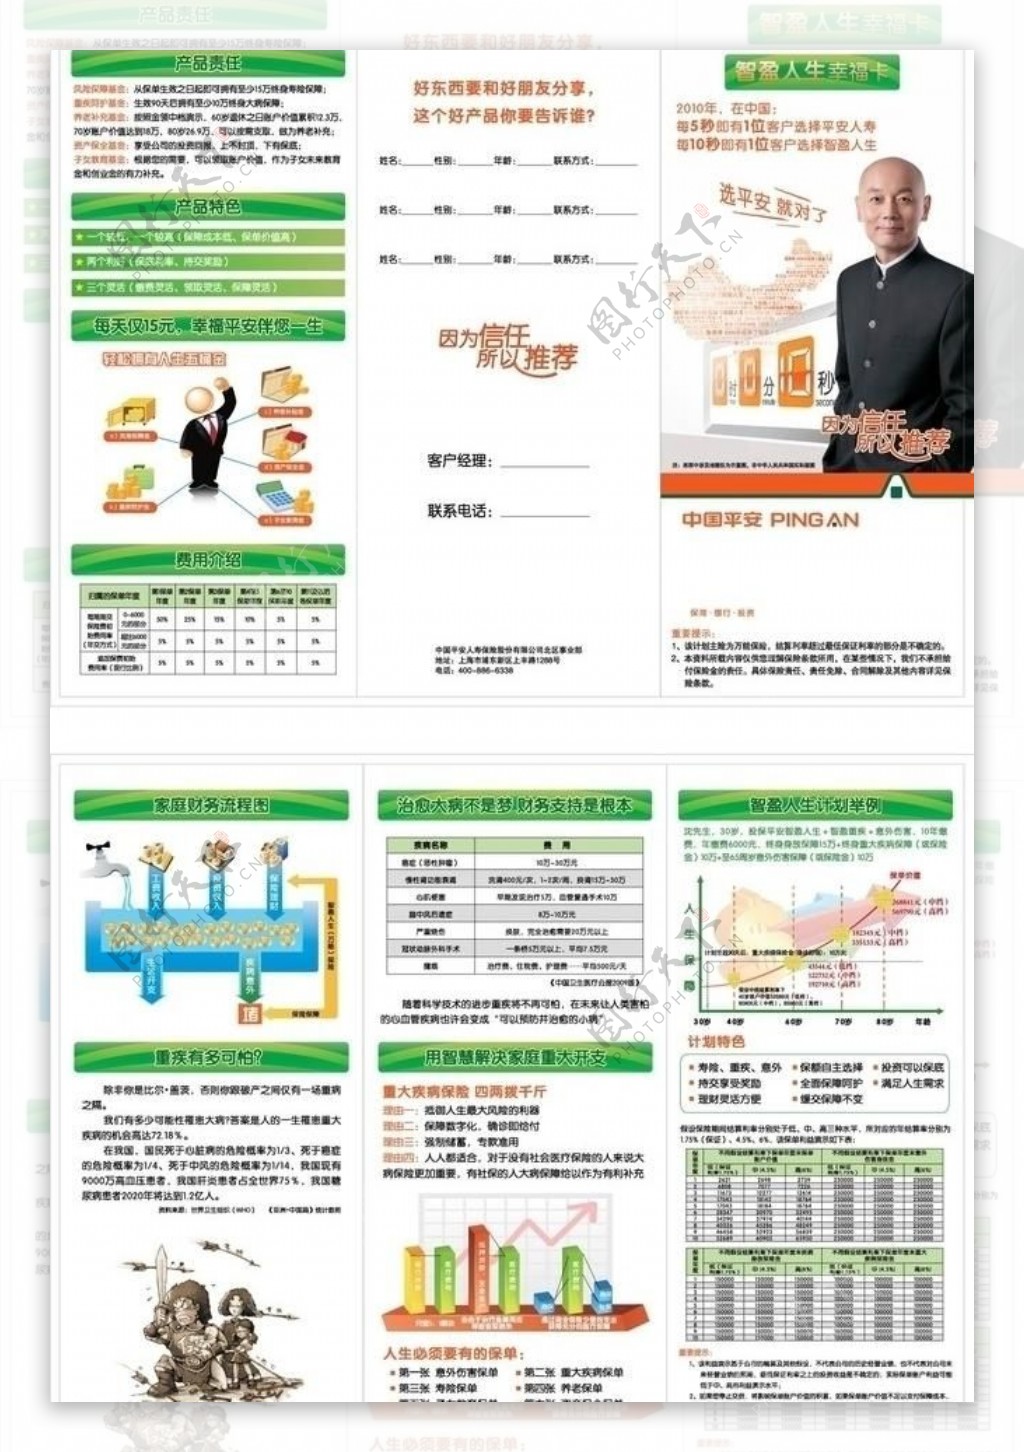 中国平安智赢人生产品三折页图片